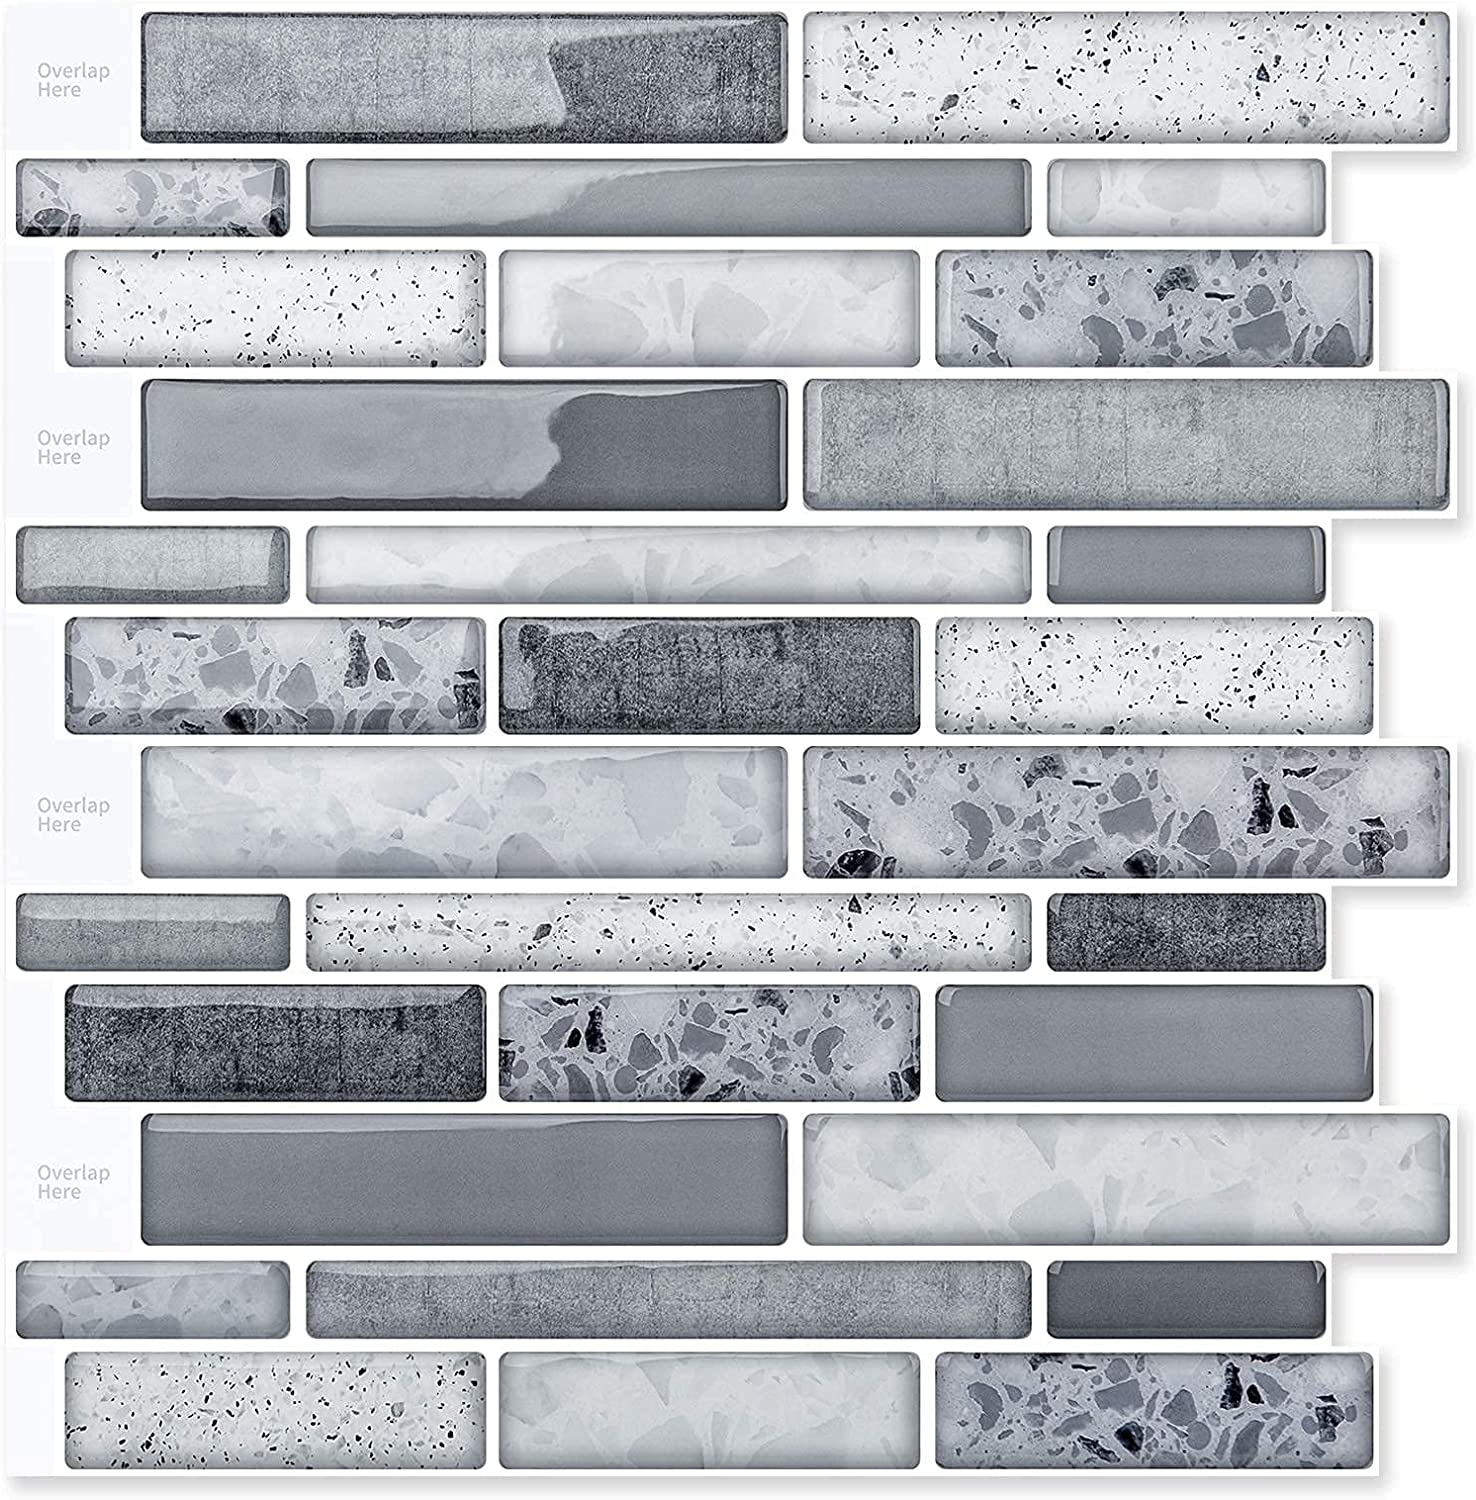 A17019 - 10-Sheet Peel and Stick Backsplash Tile for Kitchen in Stone Design